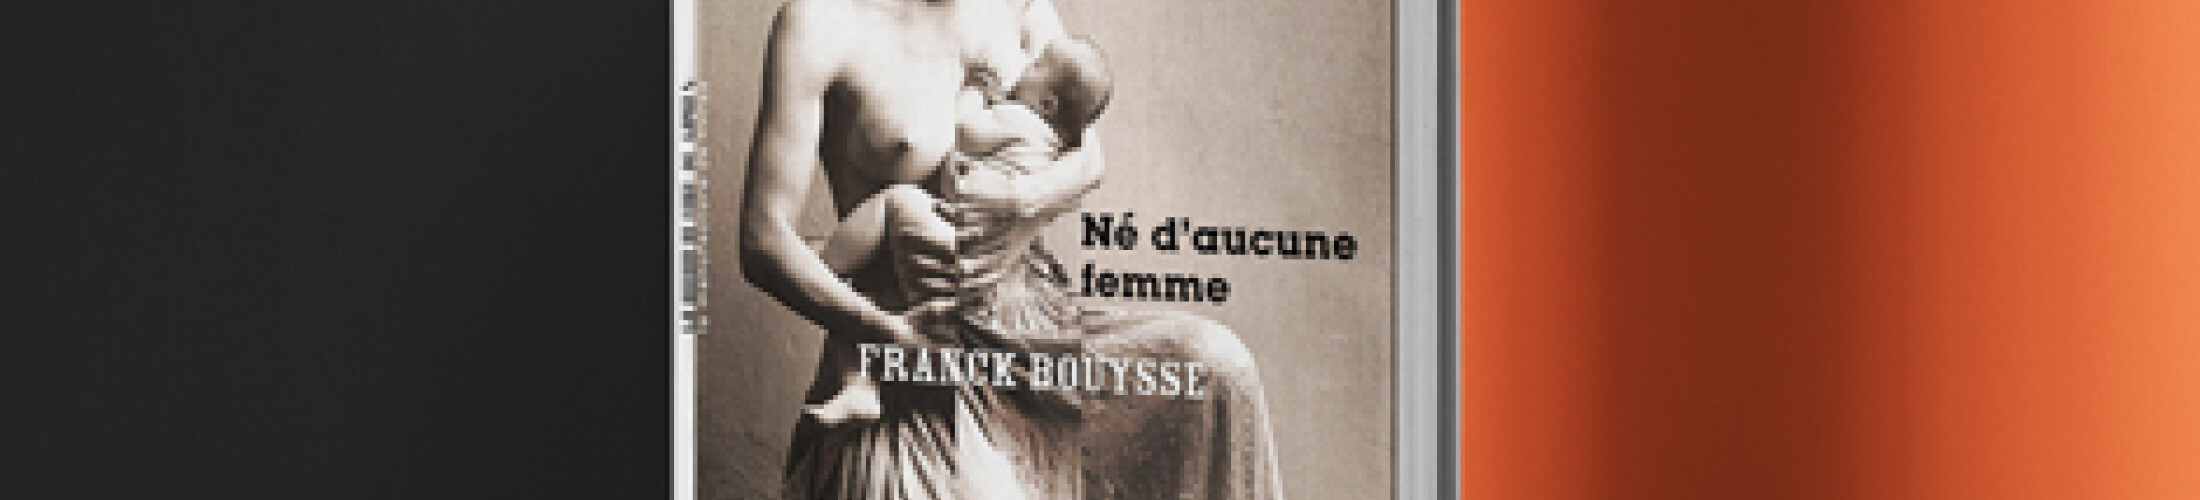 Né d'aucune femme, de Franck Bouysse